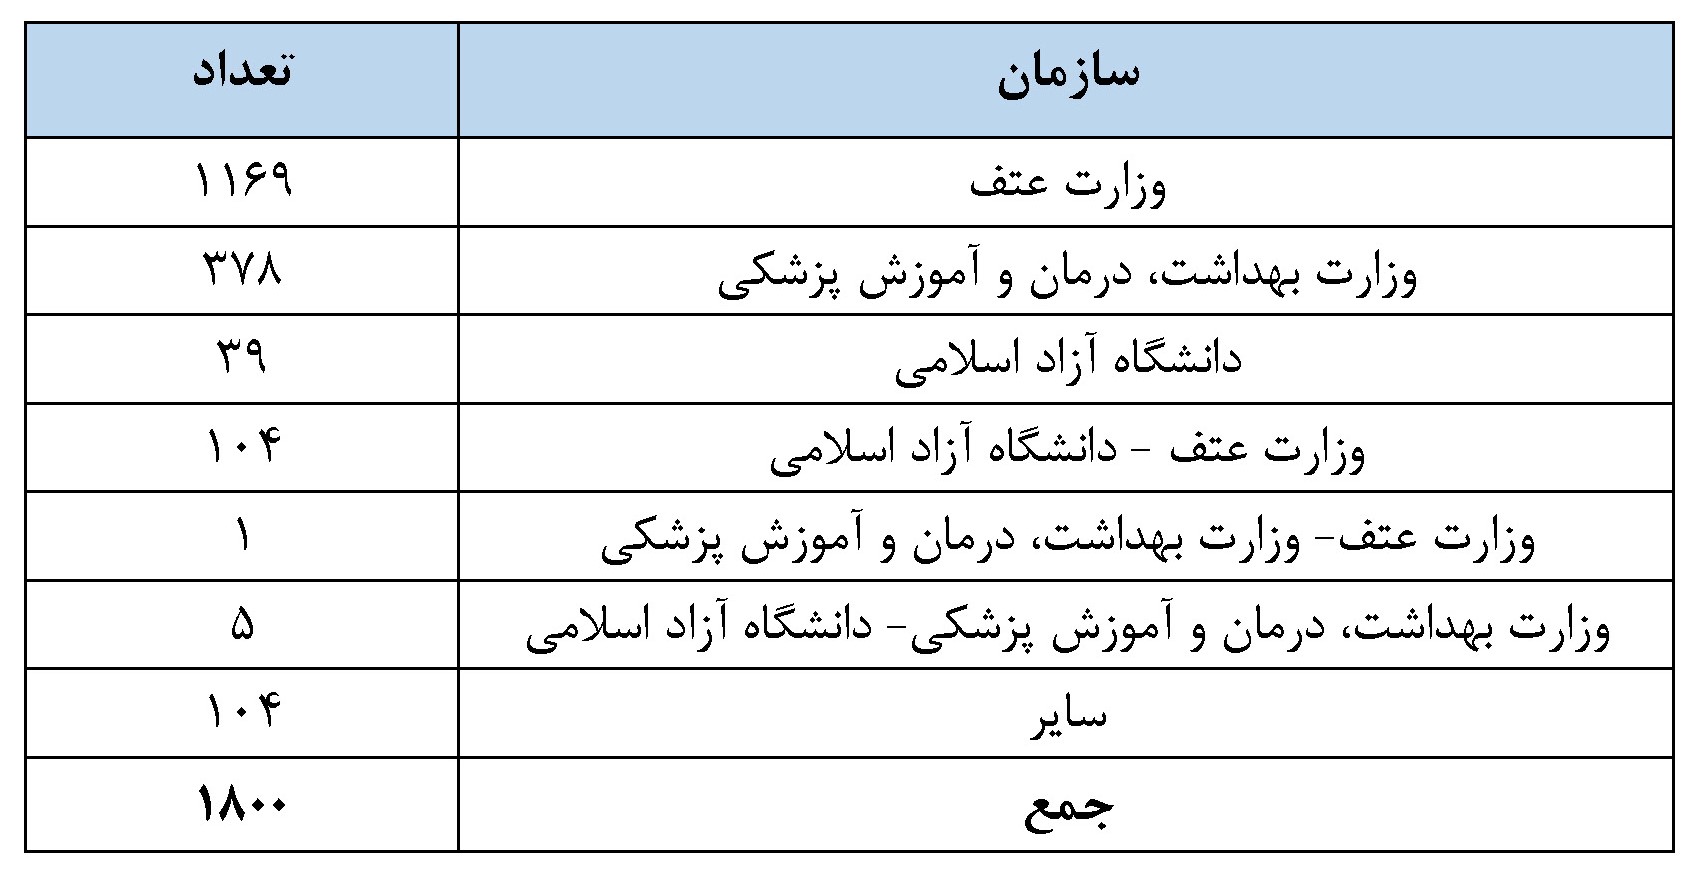 ۱۸۰۰ نشریه ایرانی در مؤسسه ISC ضریب تأثیر و چارک گرفتند